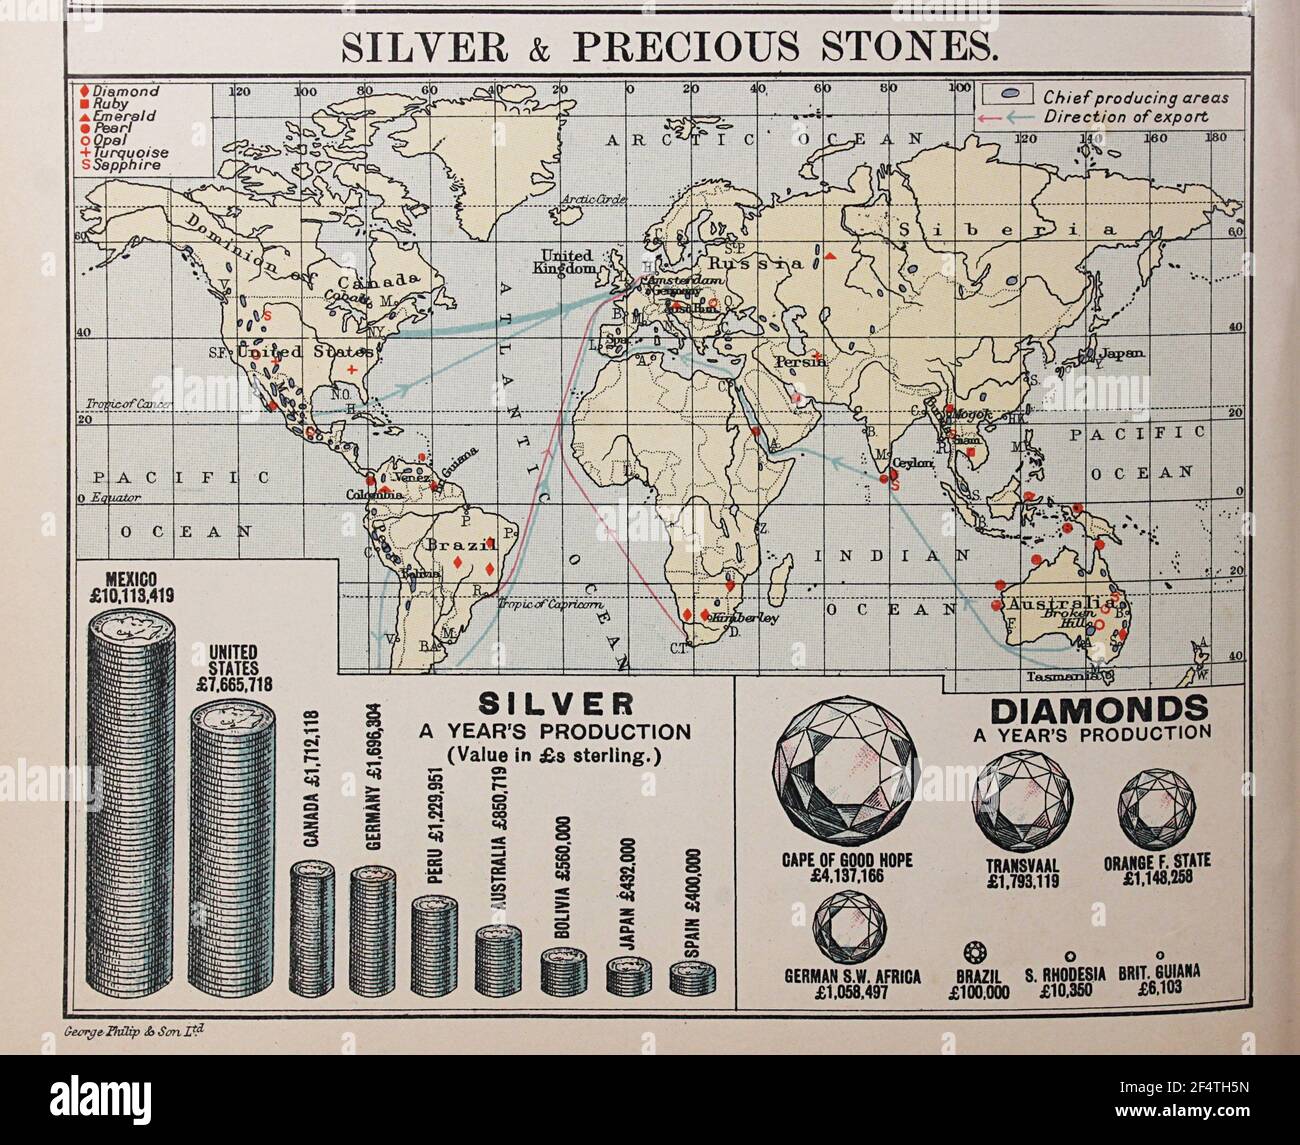 Mappa mondiale di 'Philips' Chamber of Commerce Atlas', 1912, che mostra la produzione di pietre preziose e d'argento. Foto Stock